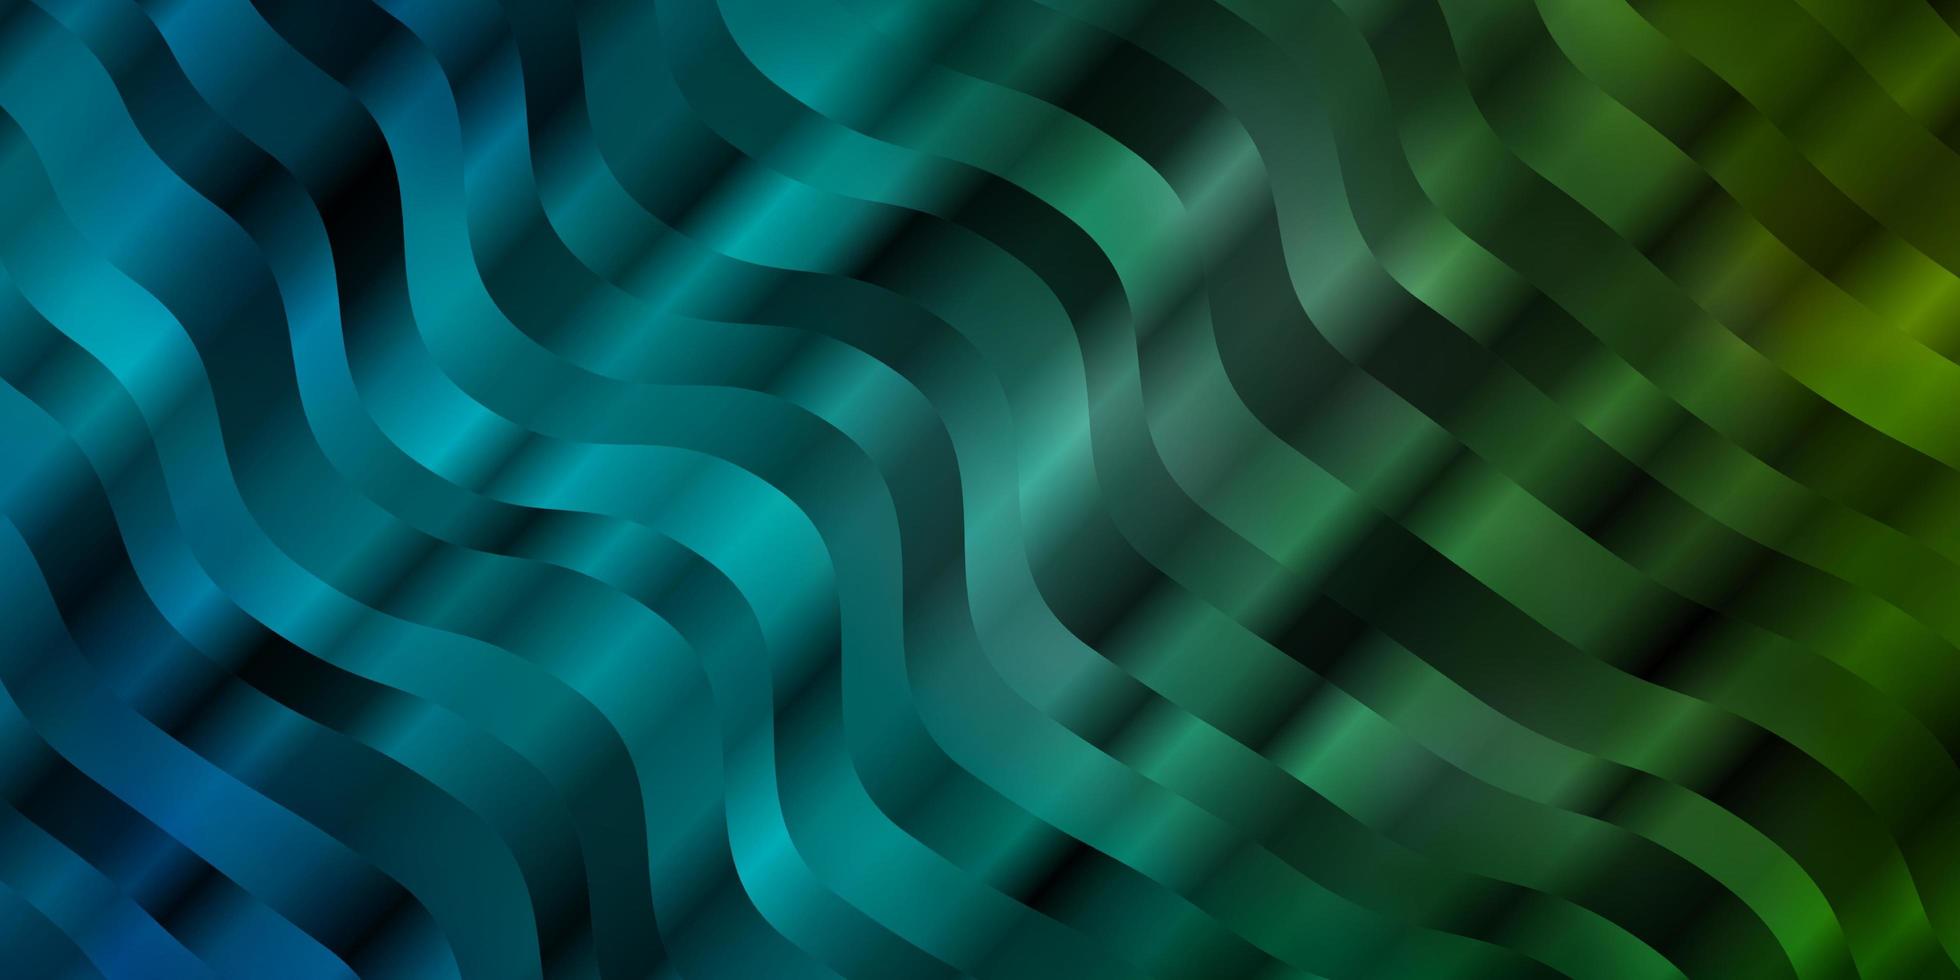 ljusblå, grön vektorbakgrund med bågar. vektor